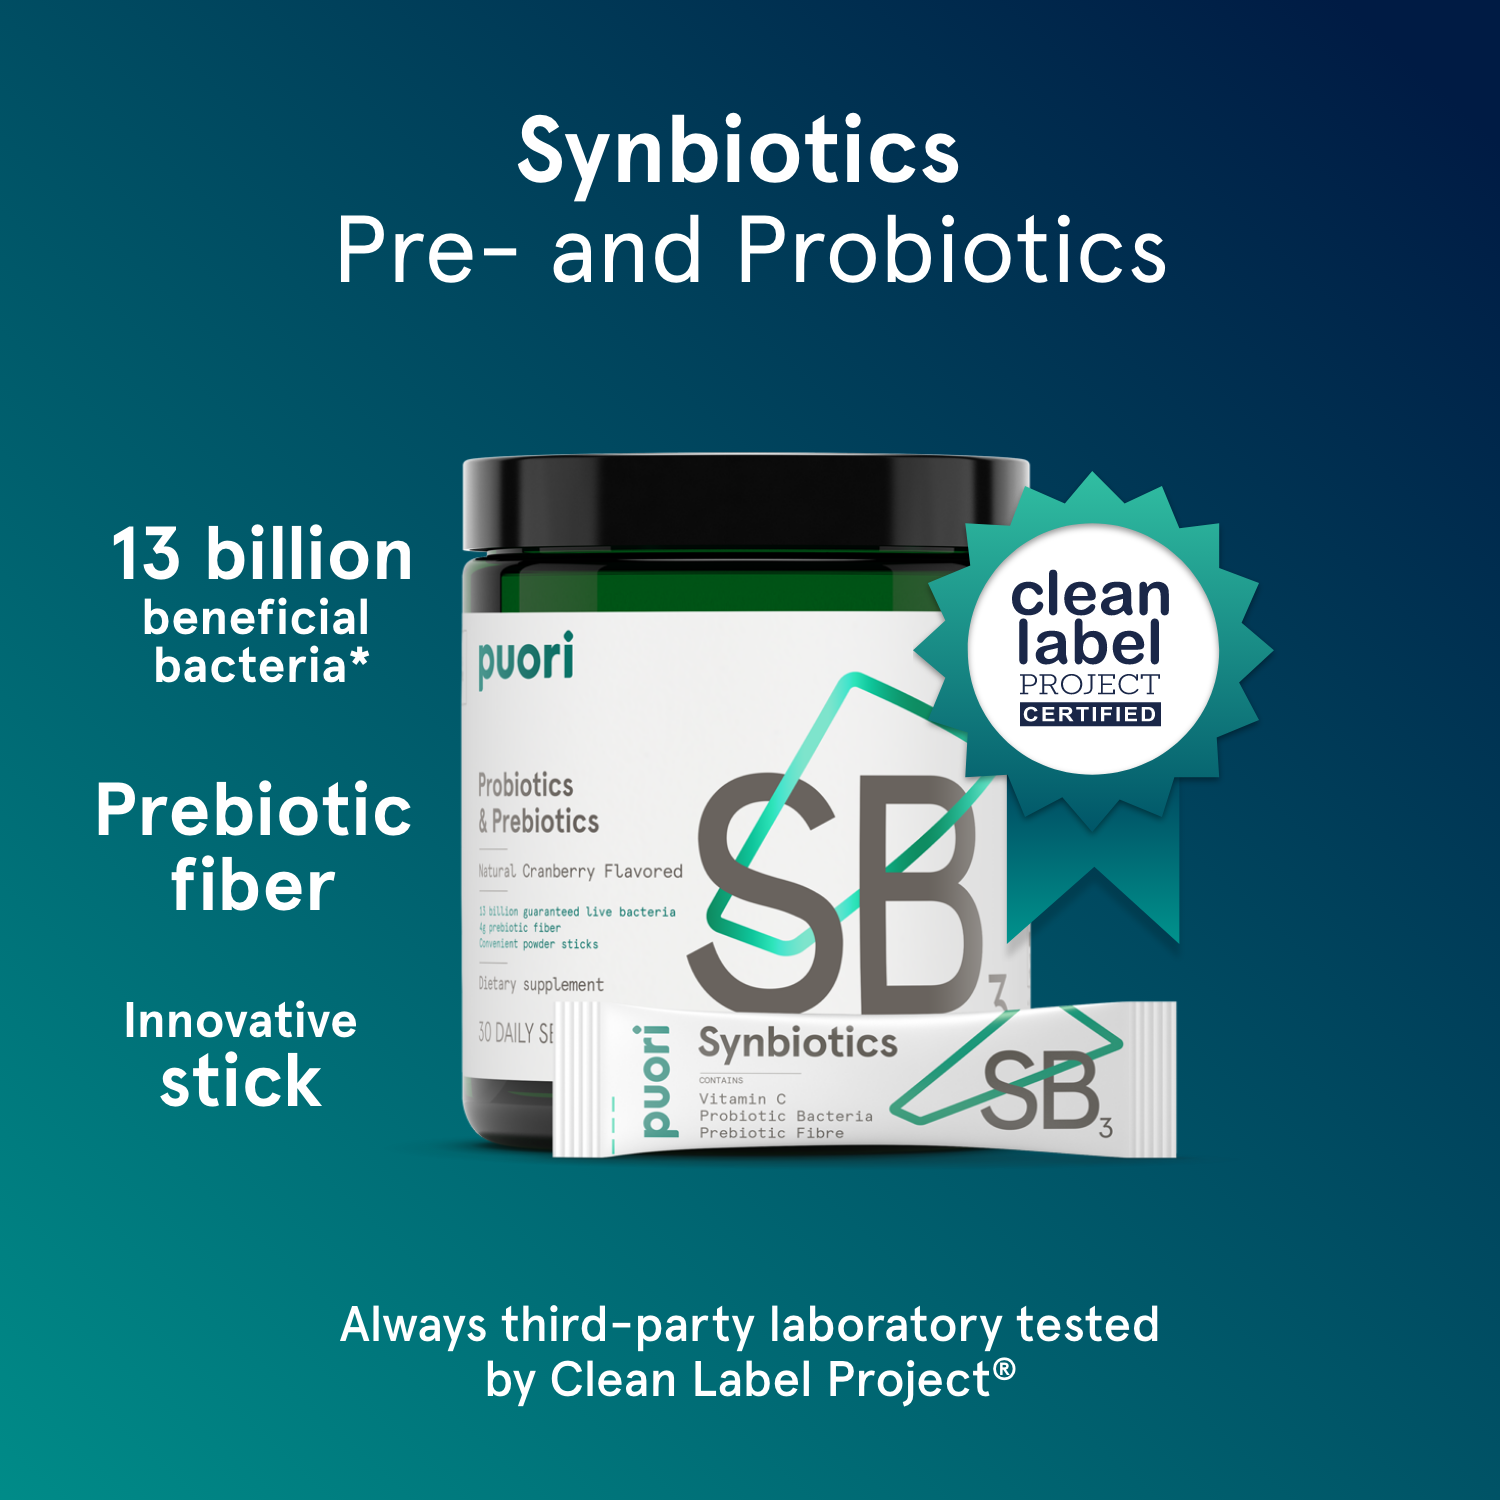 SB3 - Probiotics & Prebiotics